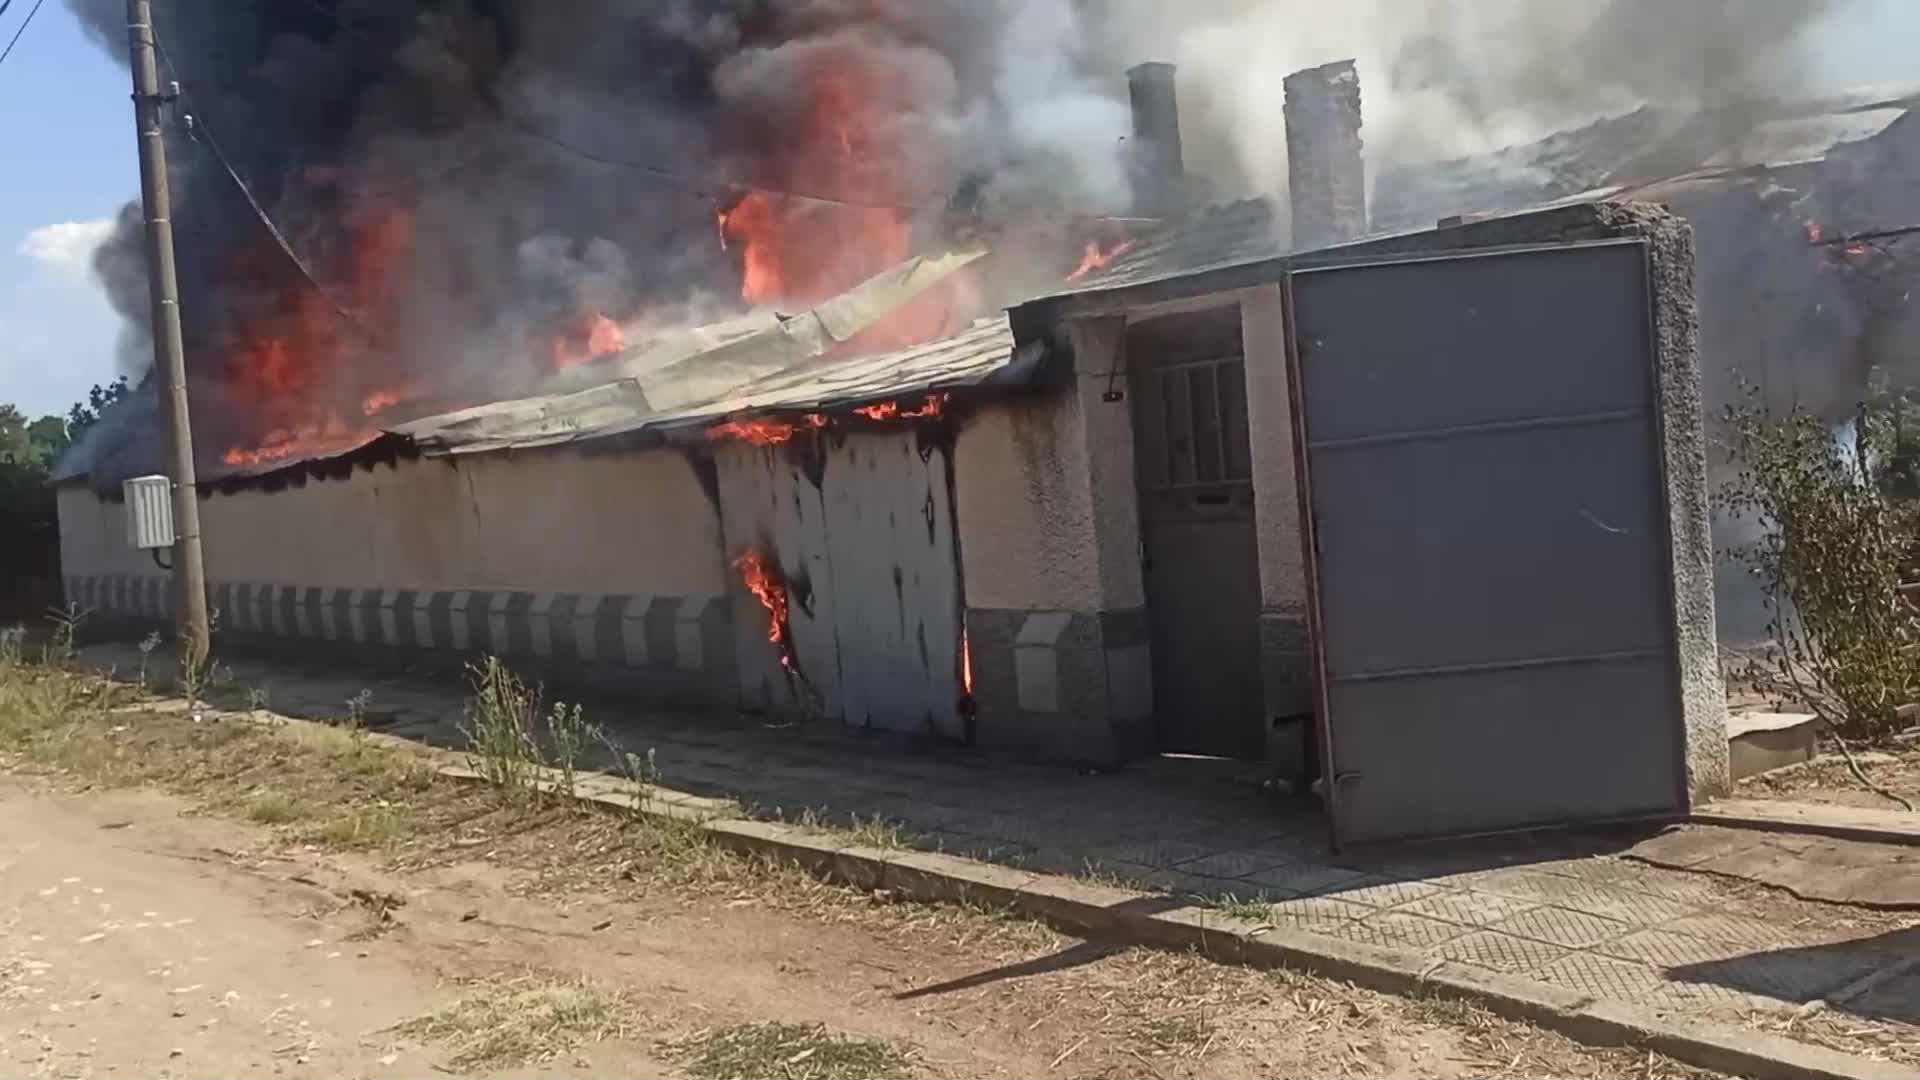 Пожар изпепели къща в пловдивското село Тюркмен